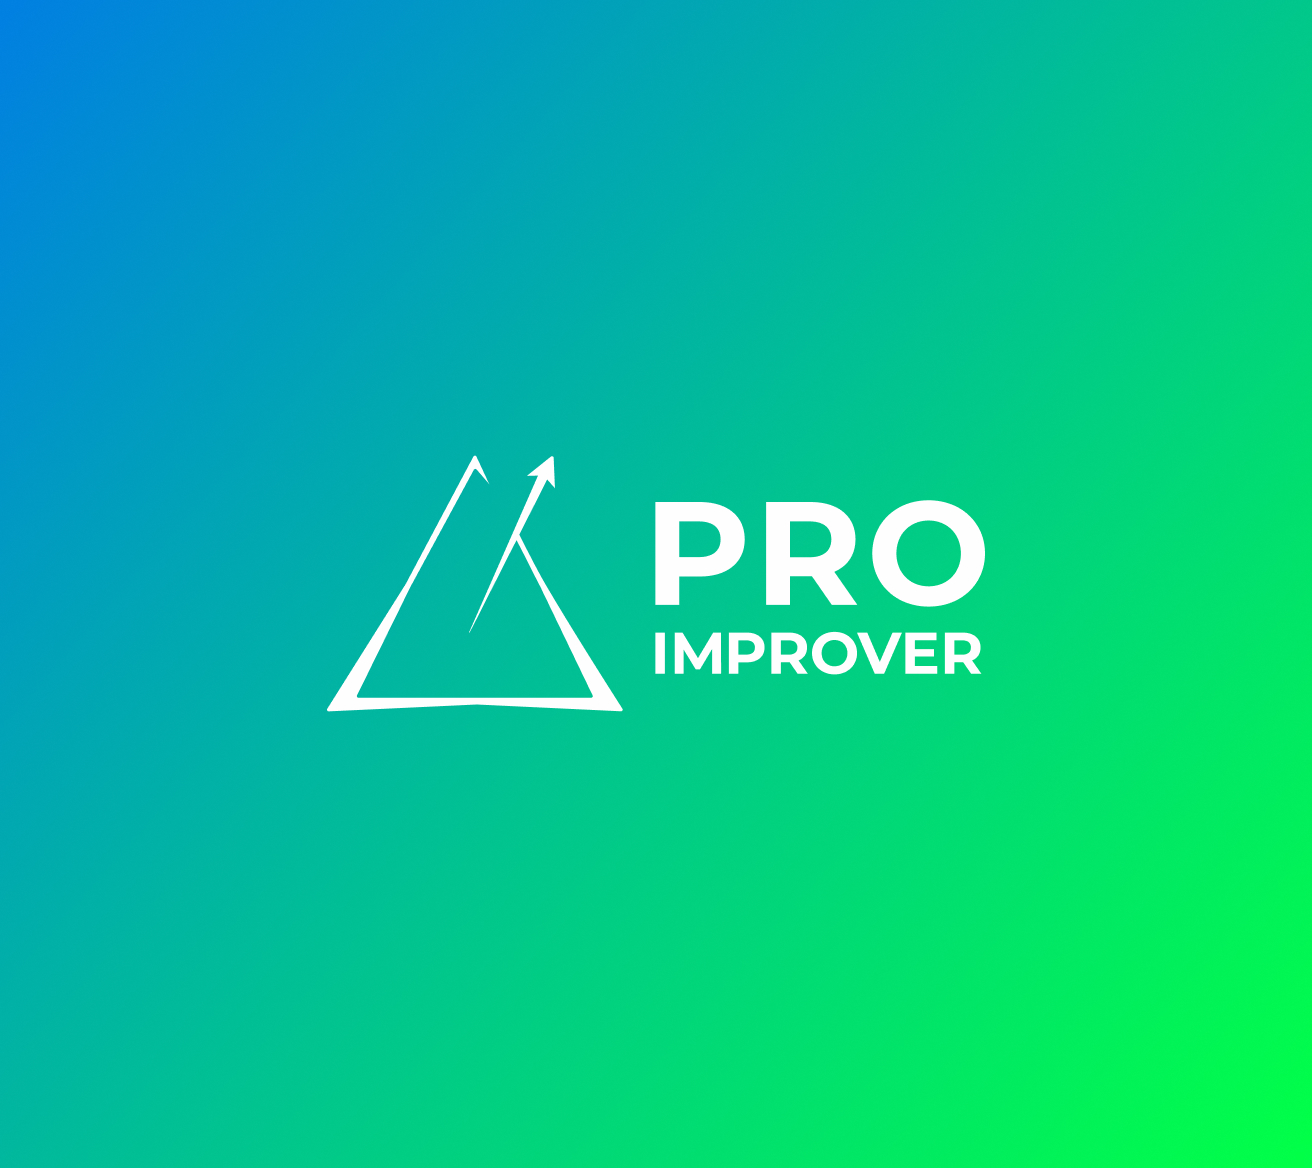 Незабаром: White Label з Proimprover за моделлю аутсорсингу